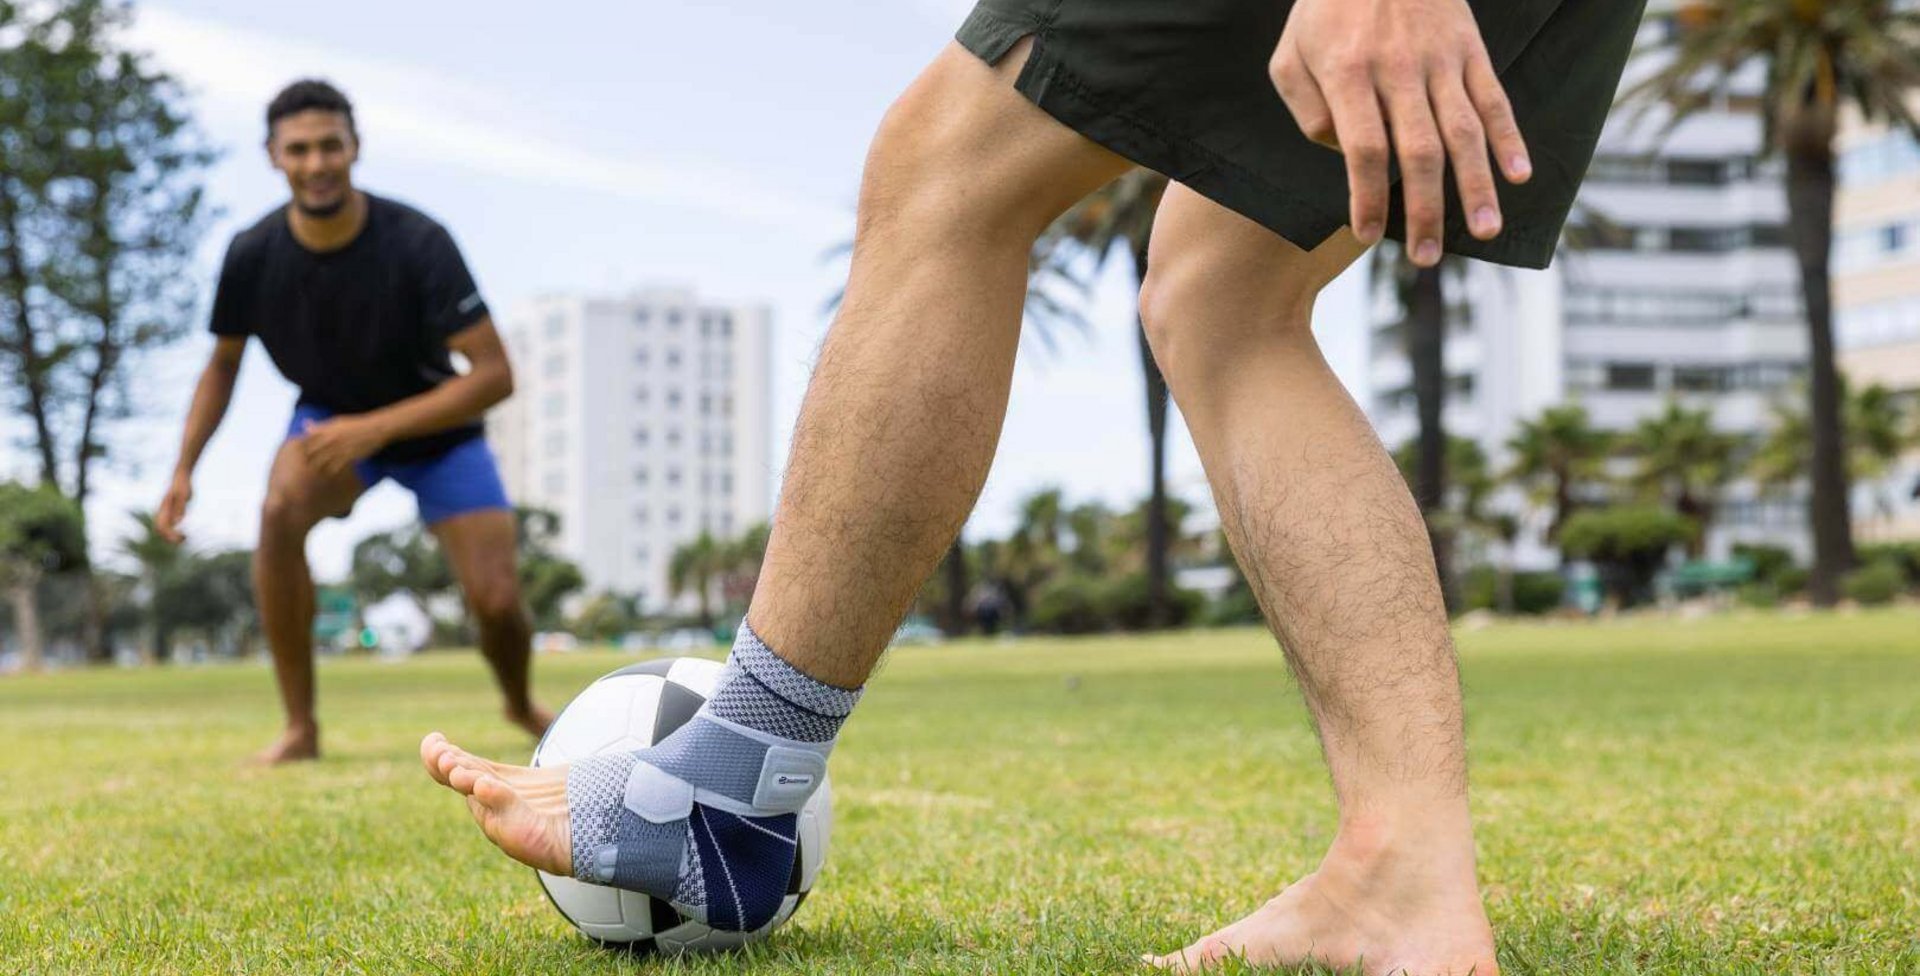 Bildausschnitt zweier Männer beim Fußballspielen im Park. Einer der Männer trägt zur Unterstützung des Sprunggelenks eine MalleoTrain Bandage am linken Bein.